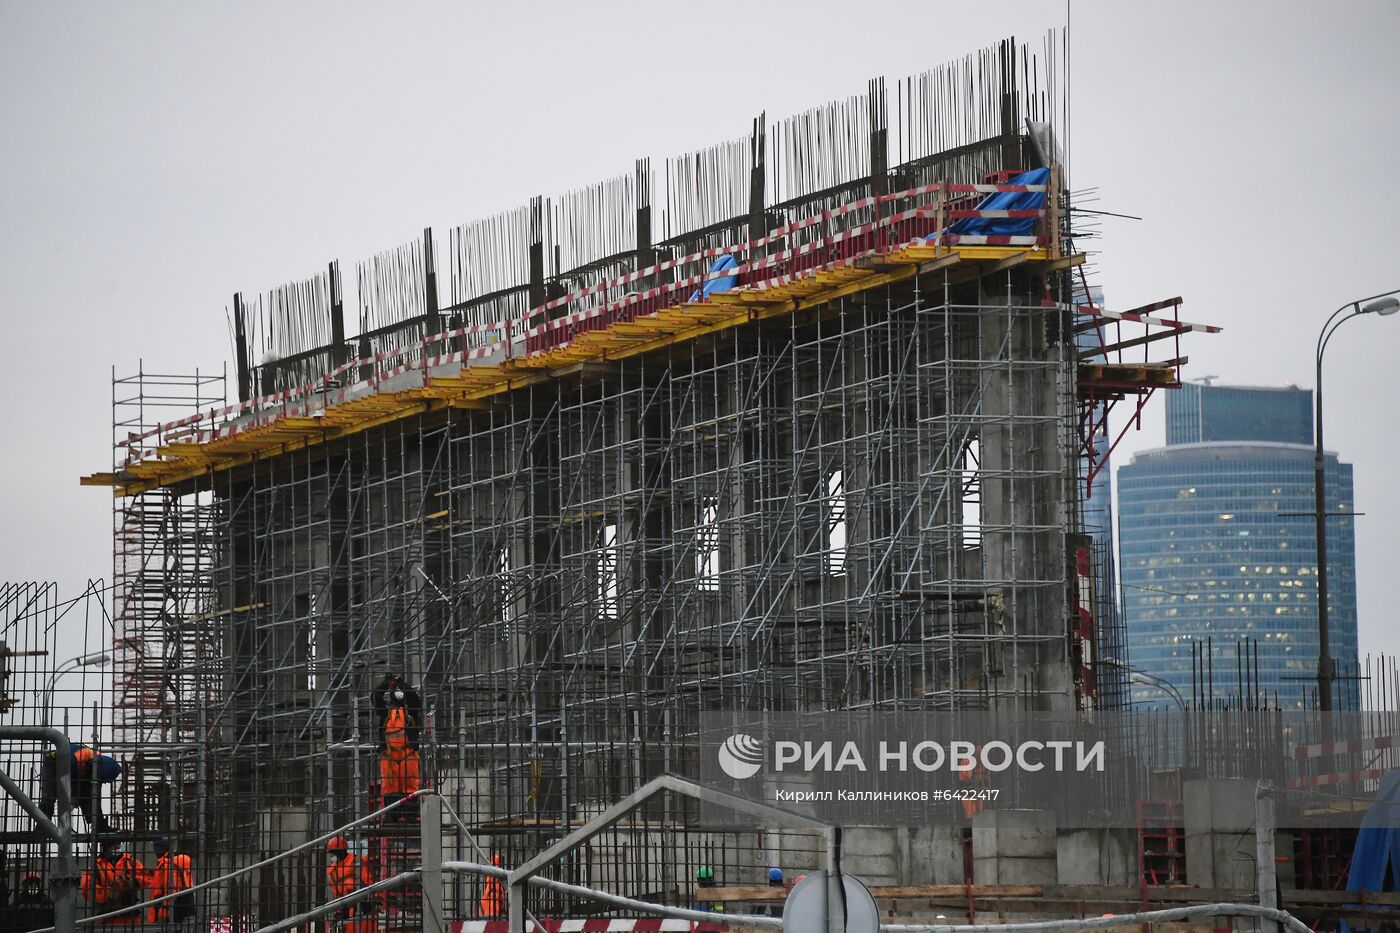 Строительство центра самбо и бокса в Москве 